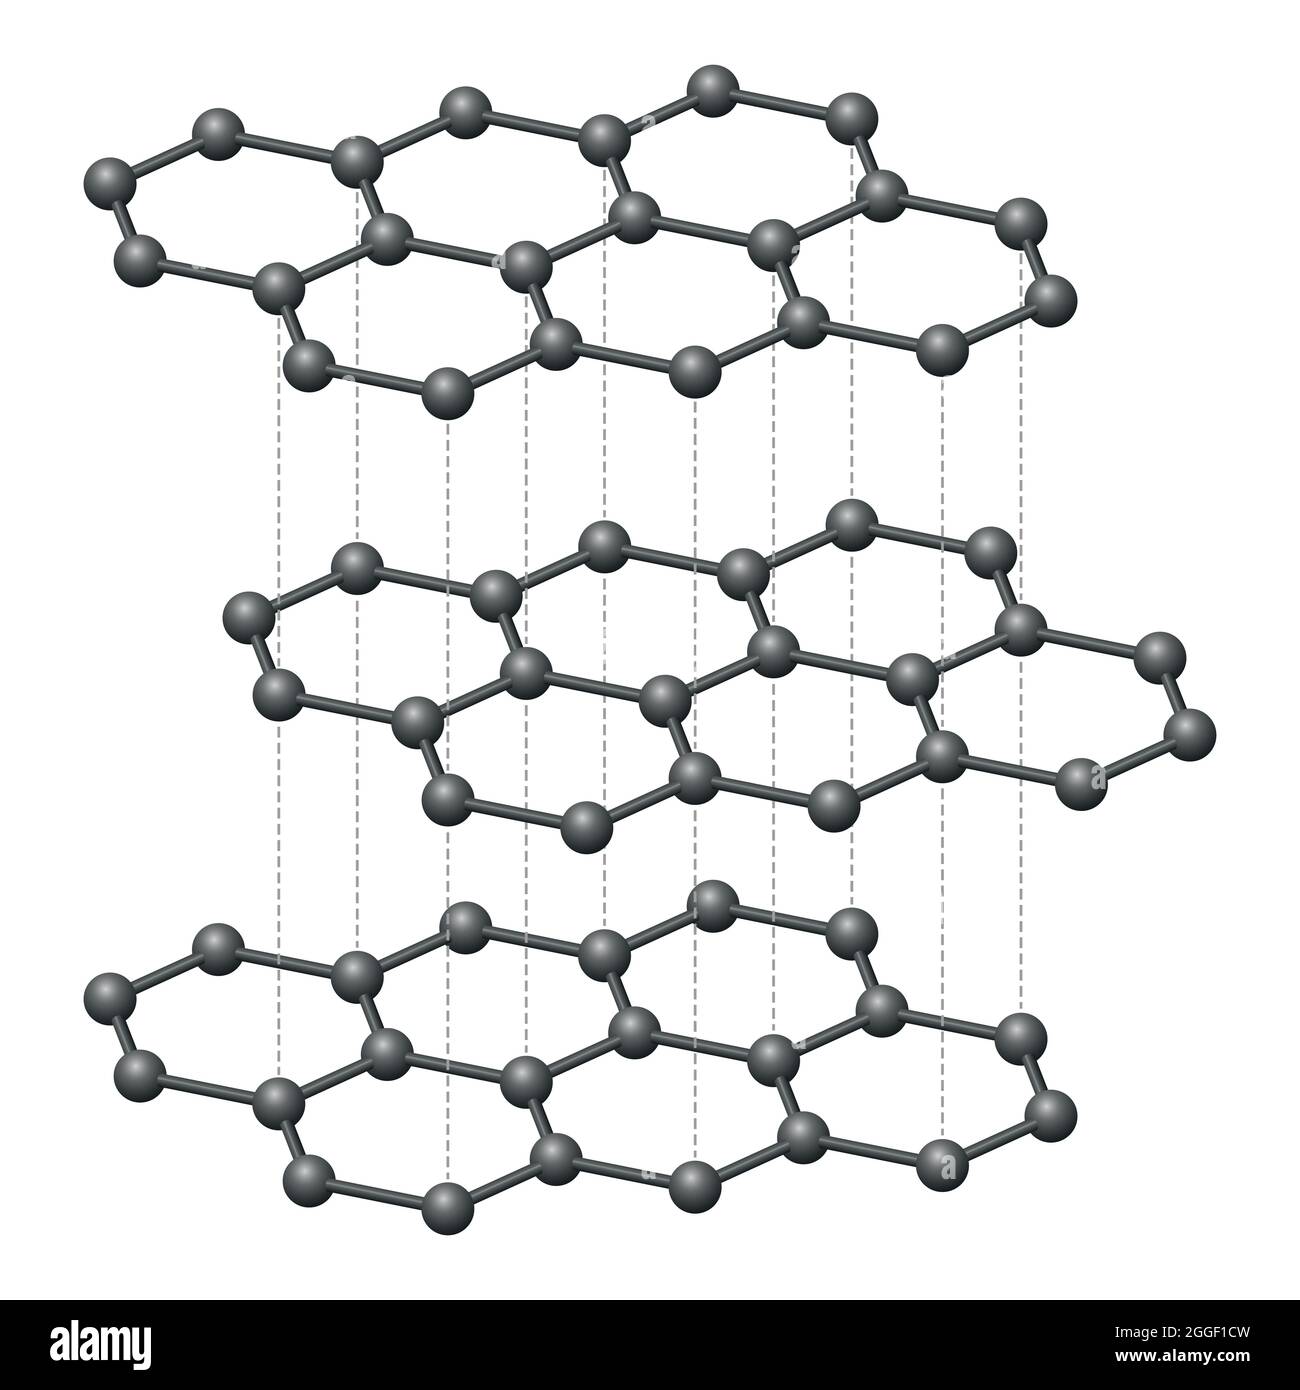 Graphitschichten, dreidimensionales schematisches Diagramm. Kristalline Form von Kohlenstoffatomen, hexagonal angeordnet, bilden flache Wabengitter-Schichten. Stockfoto